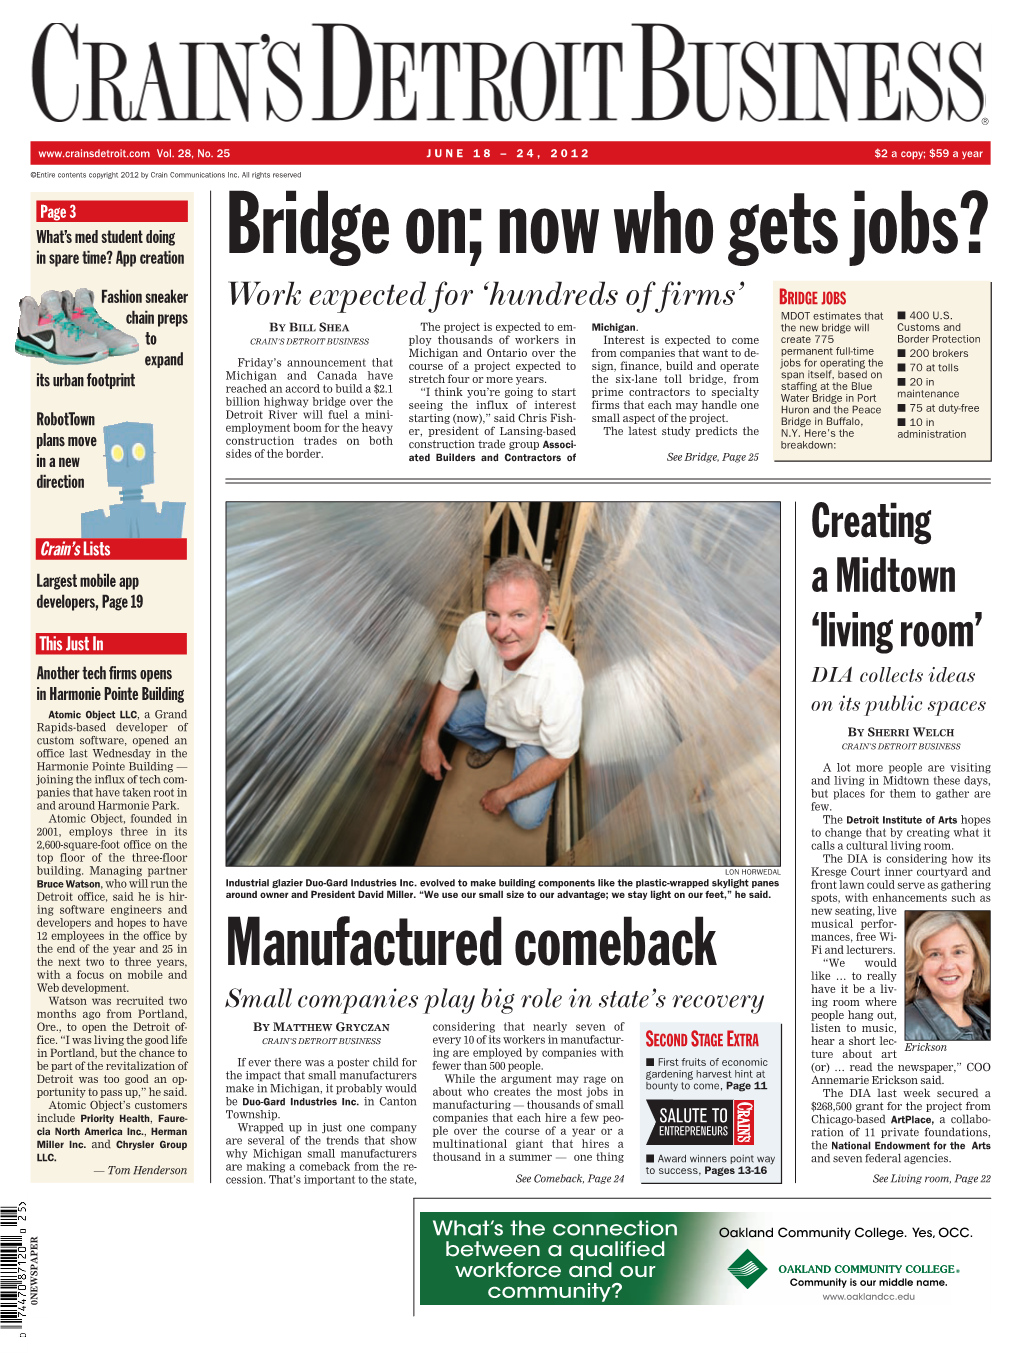 Bridge On; Now Who Gets Jobs?